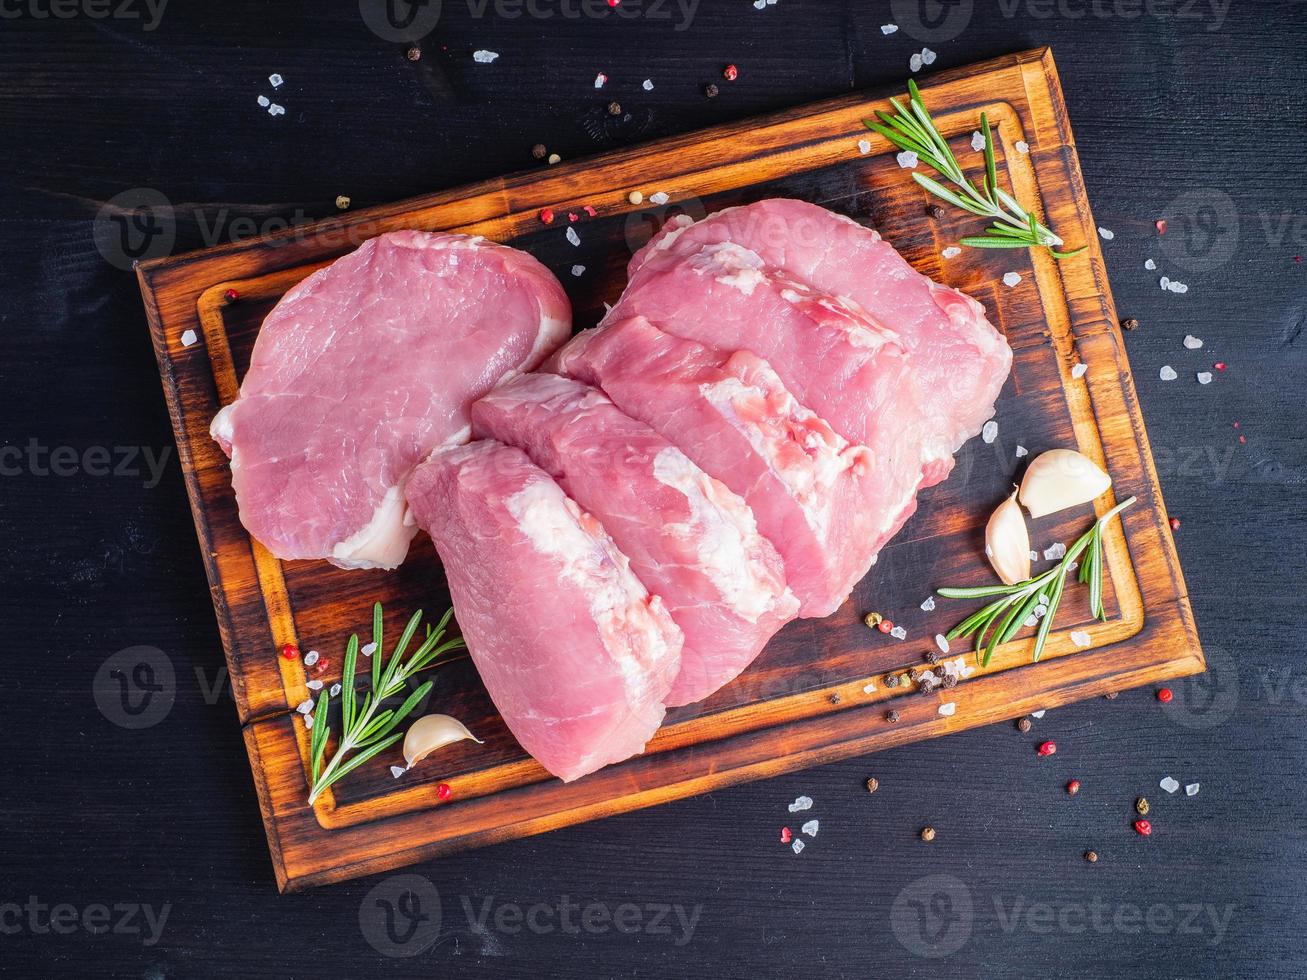 bife de porco, filé de carbonato cru em fundo escuro, carne com alecrim, temperos, vista superior foto